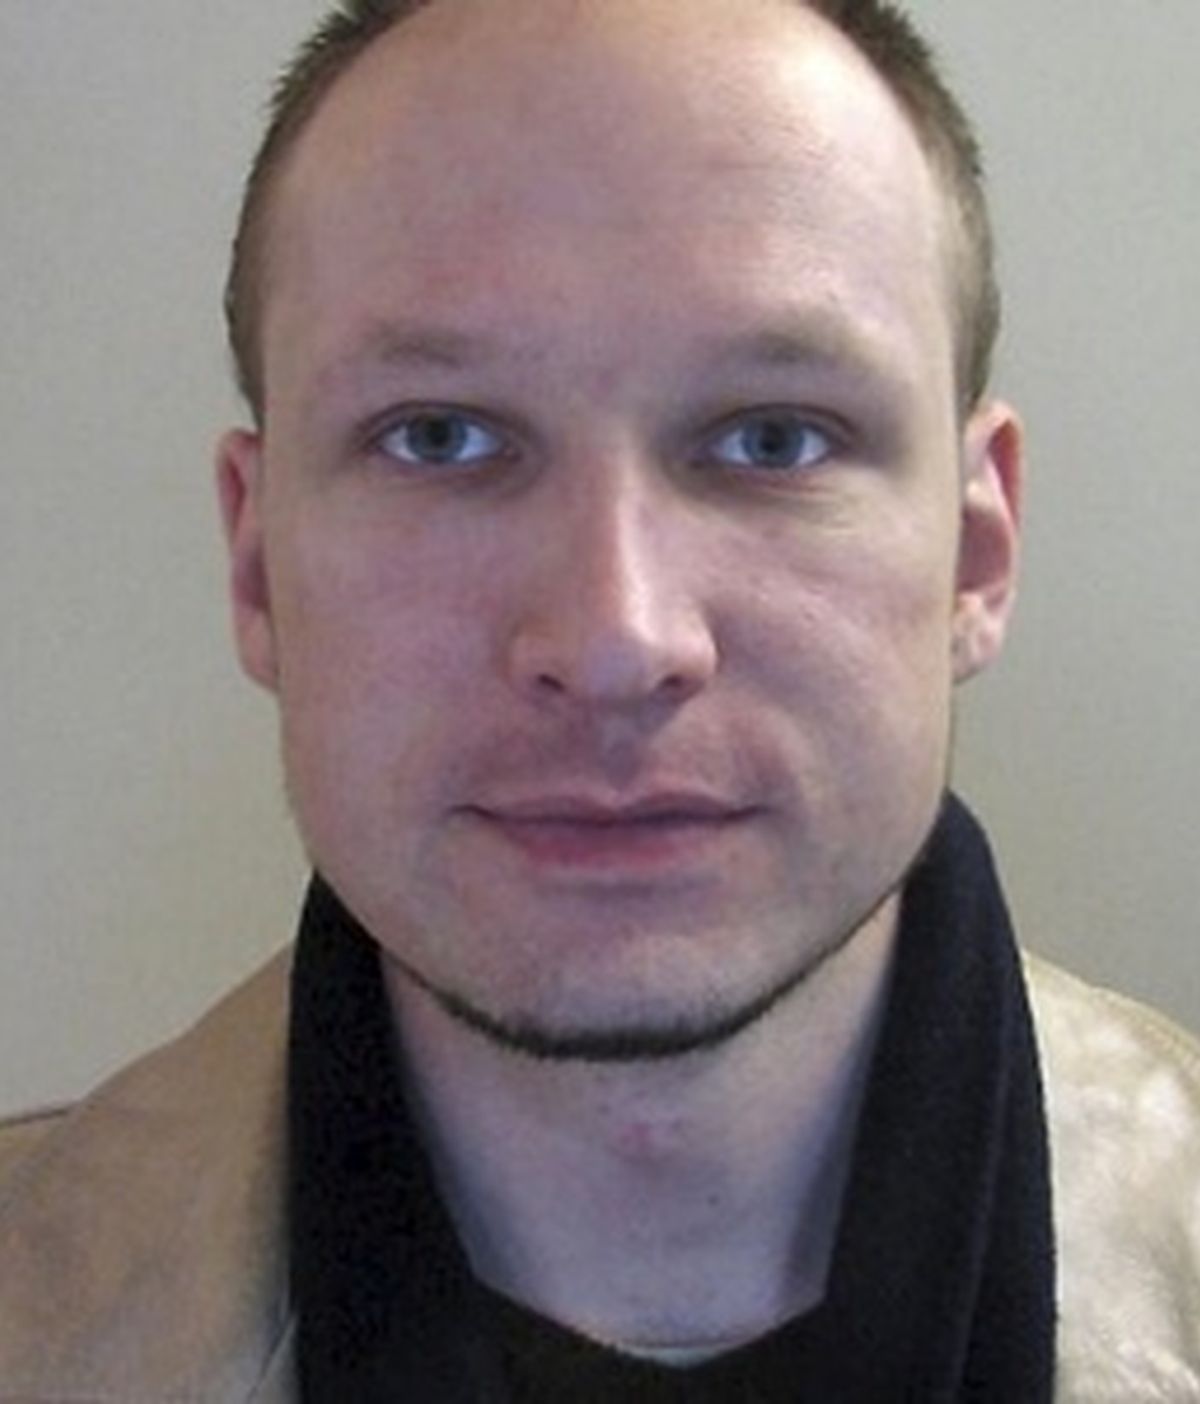 Anders Behring Breivik ha admitido que fue él quien llevó a cabo la masacre del pasado 22 de julio en Oslo